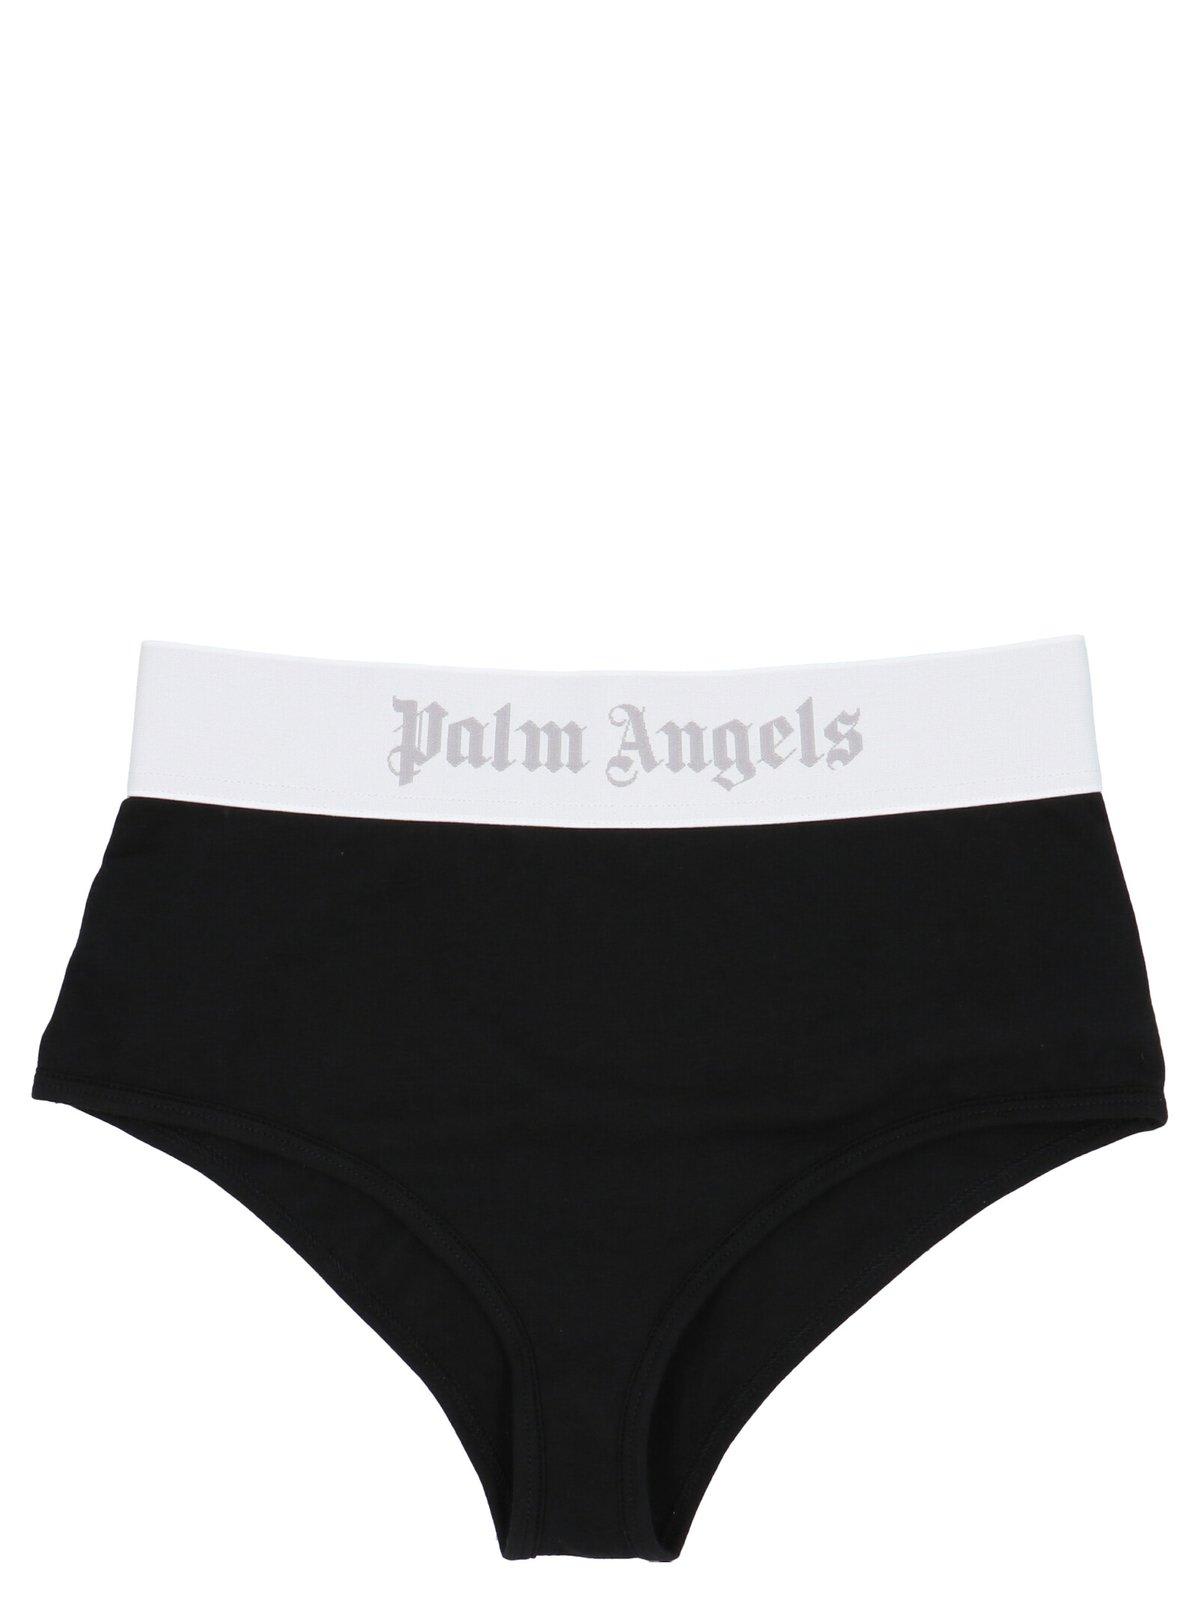 Palm Angels Logo Band High Waist Underwear